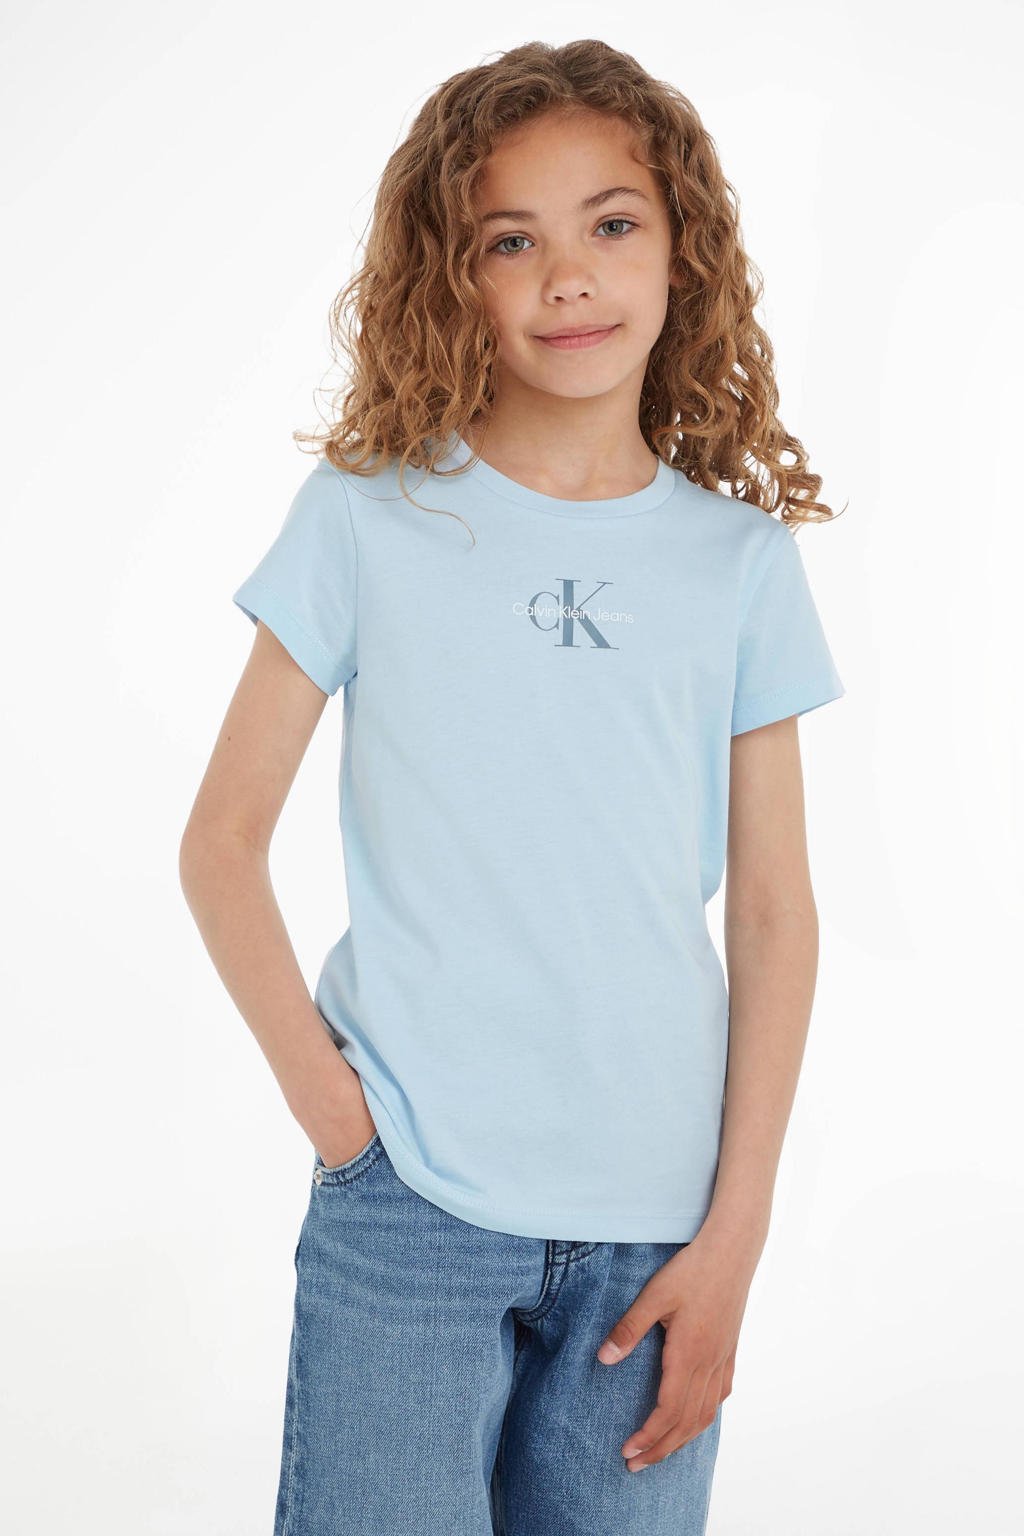 Blauwe meisjes Calvin Klein T-shirt van duurzaam katoen met logo dessin, korte mouwen en ronde hals